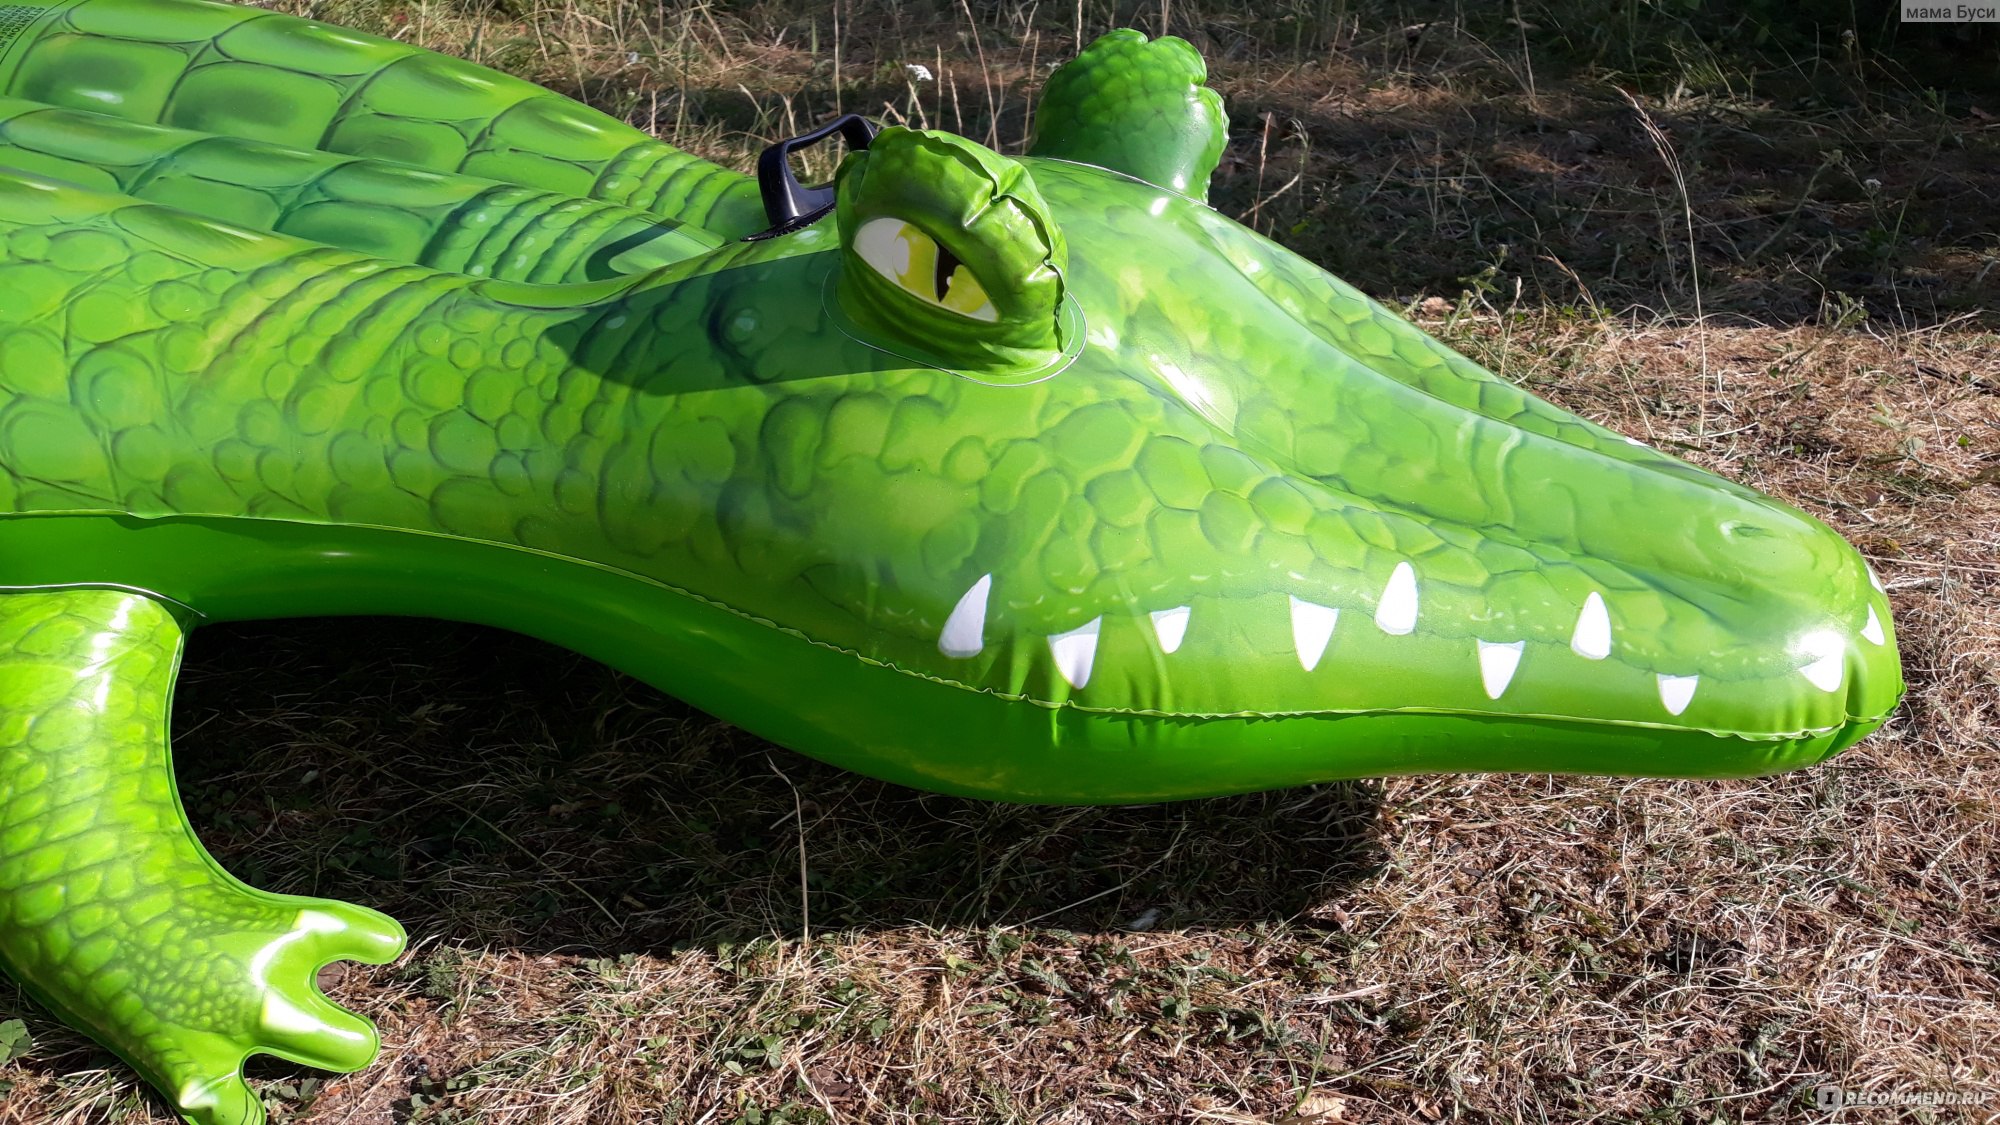 Зеленый Крокодил Интернет Магазин